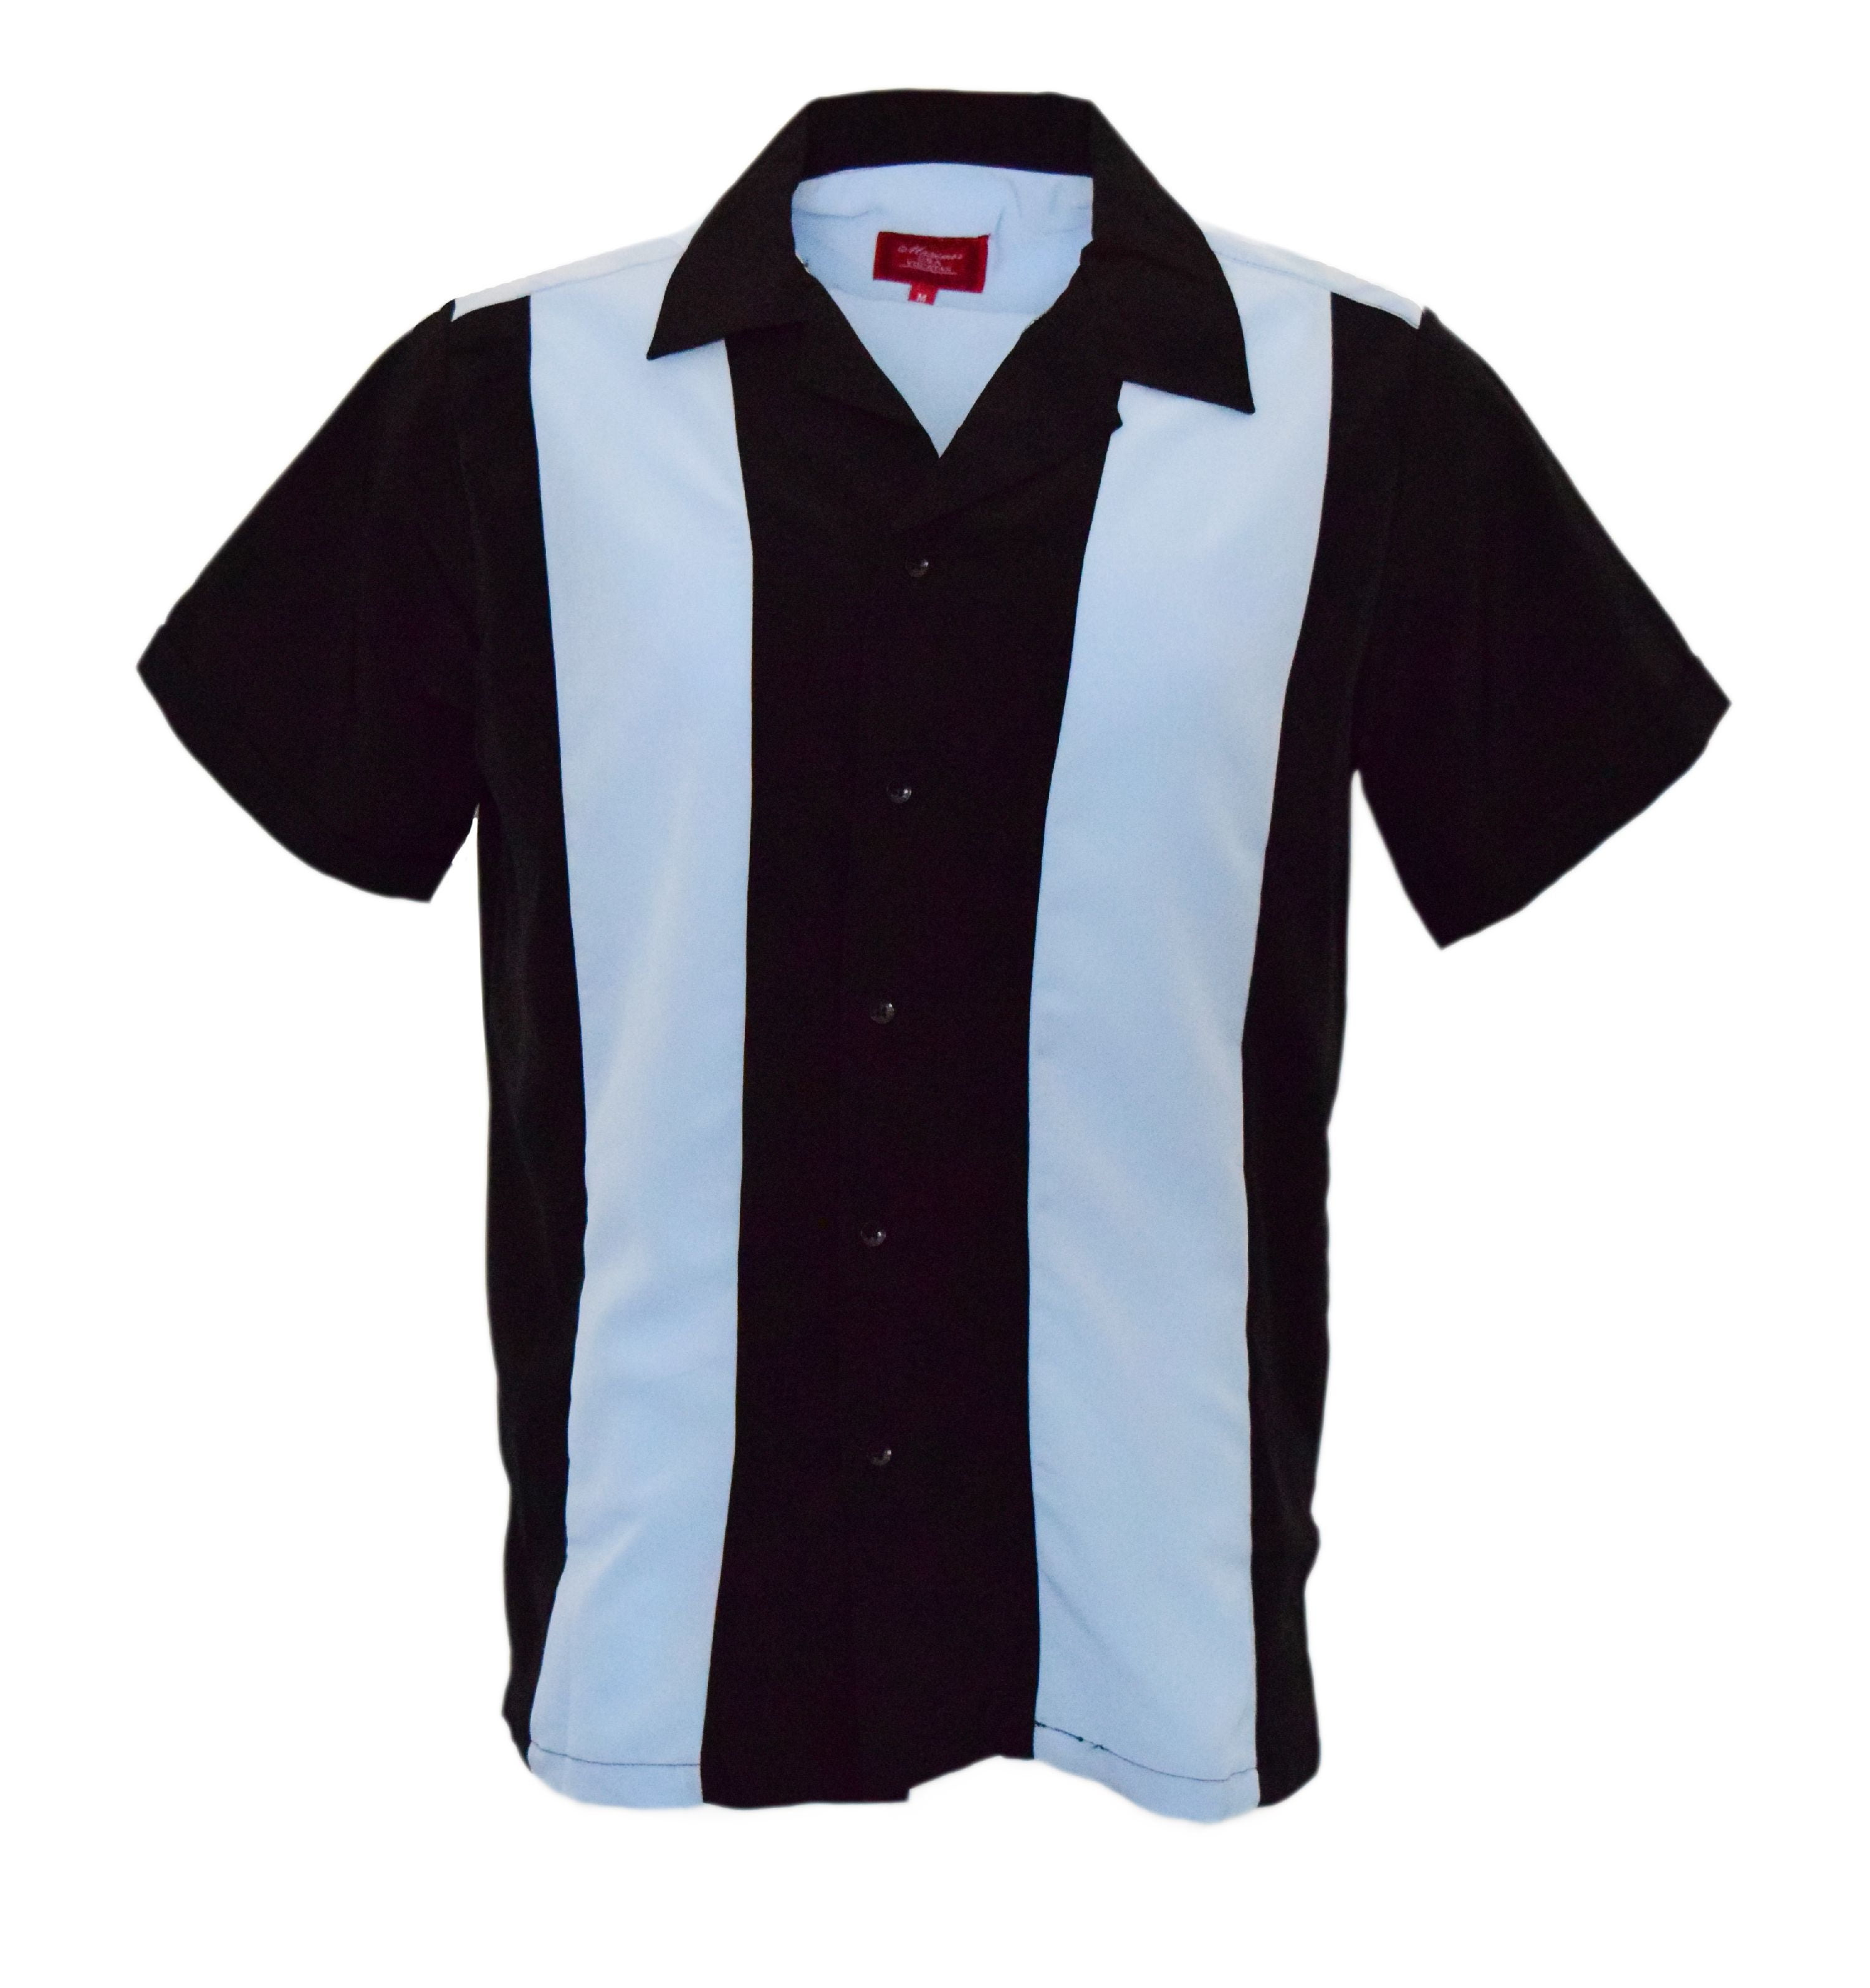 Guayabera Men's Retro Classic Bowling Two Tone Dress Shirt Light Blue ...